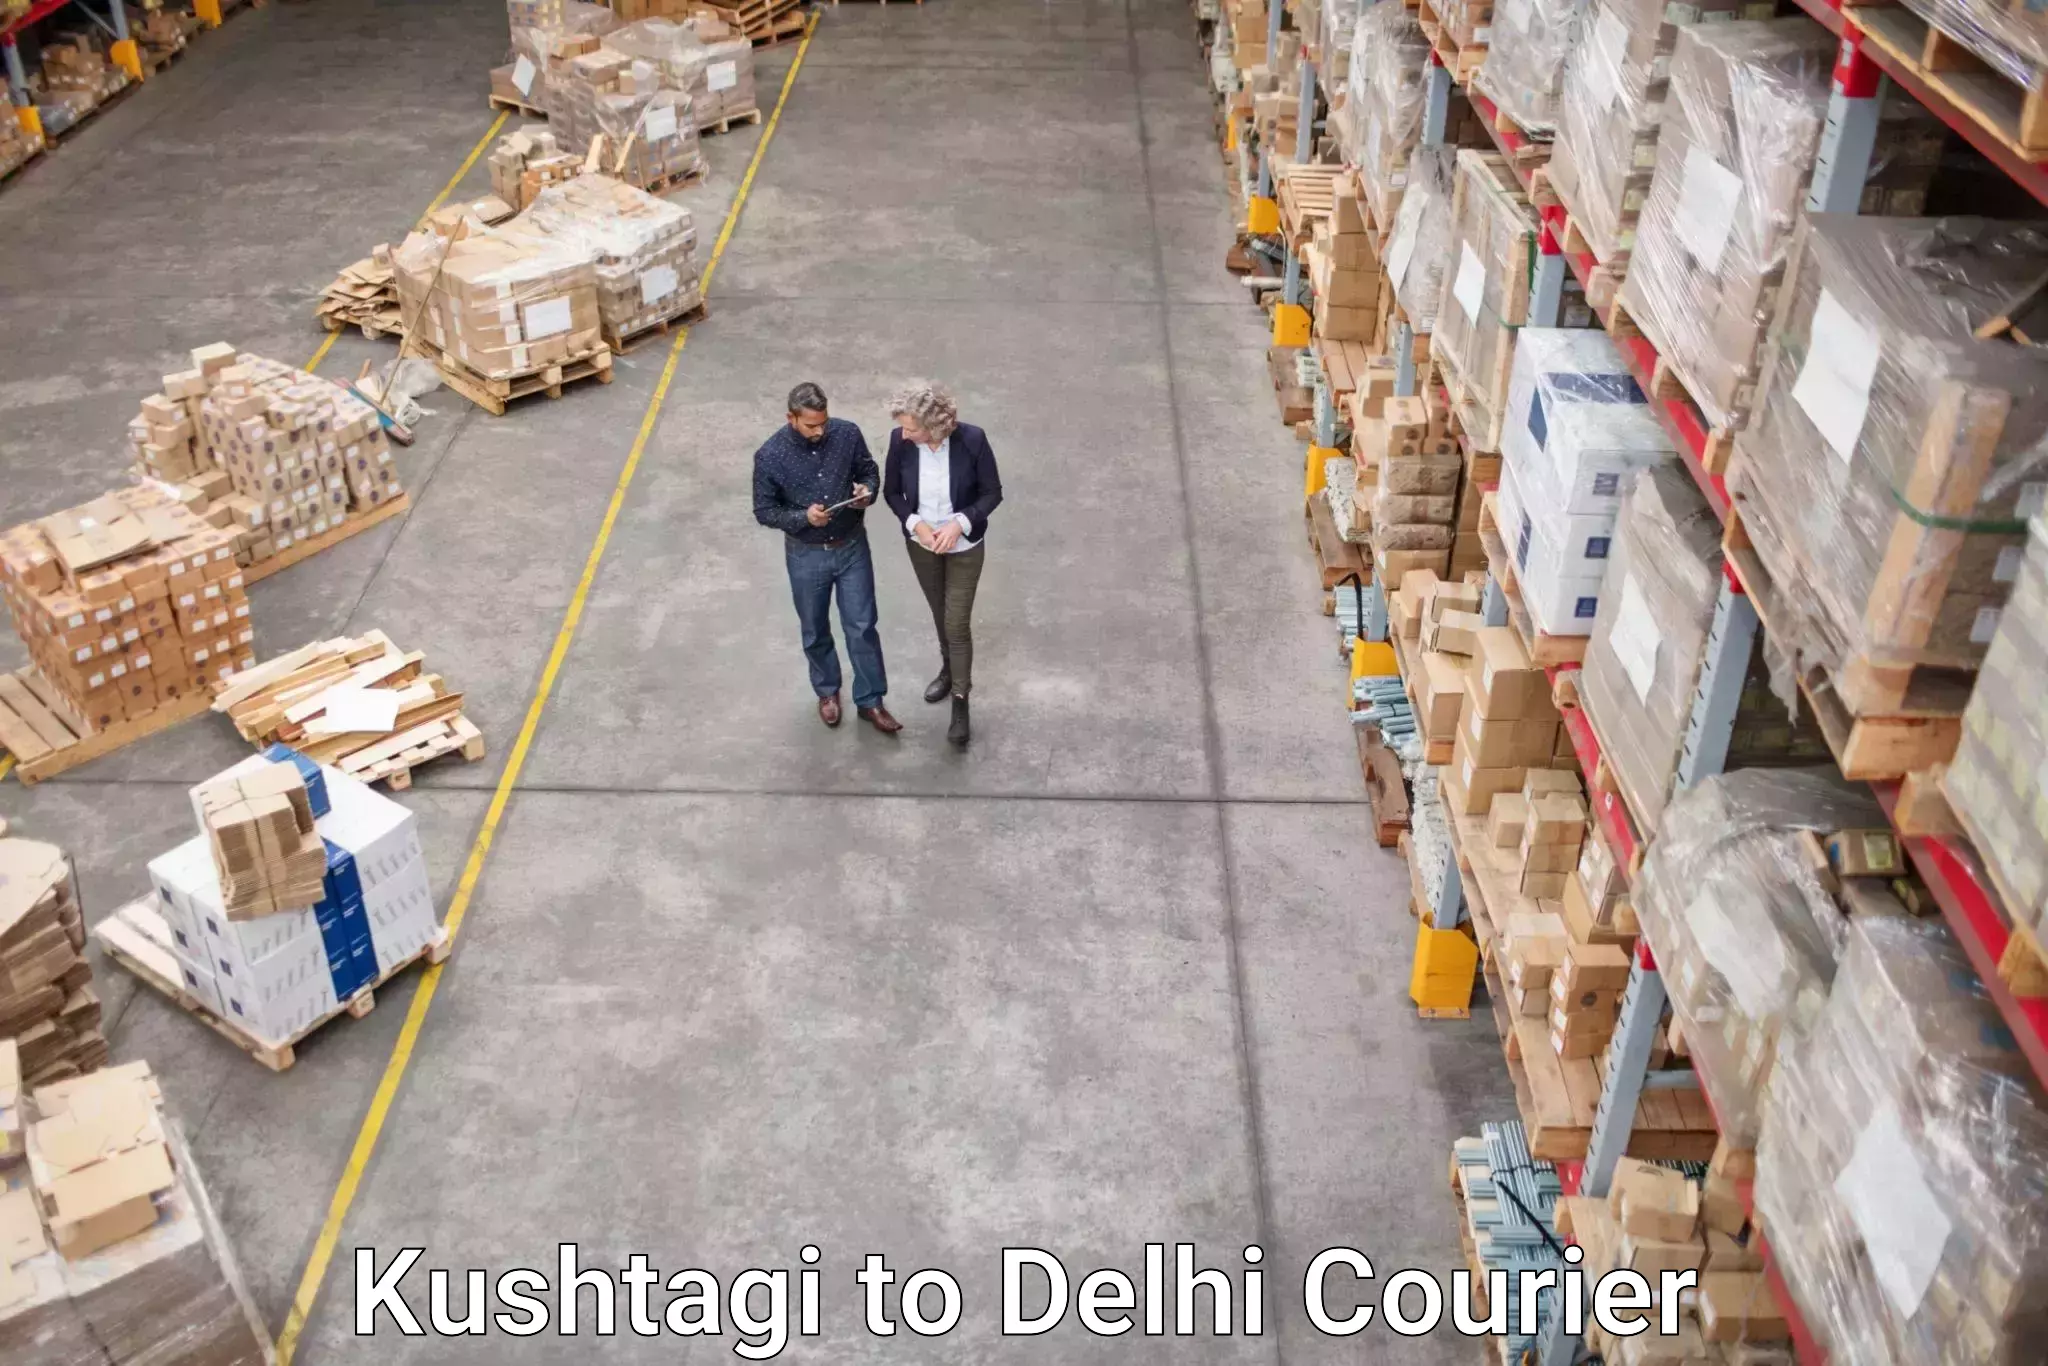 Expedited shipping methods Kushtagi to Sansad Marg